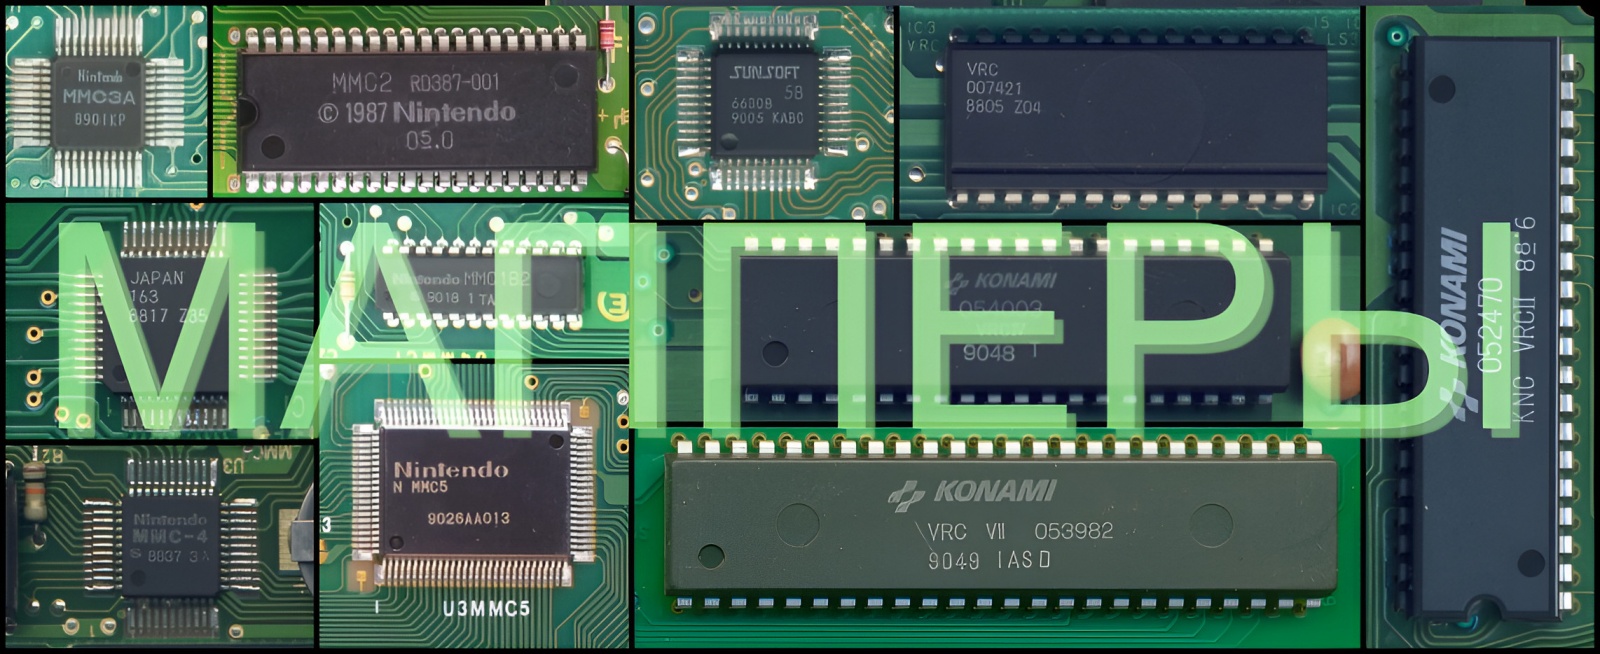 Мапперы на Famicom, NES, Денди: откуда взялись и зачем нужны (часть 2-2) - 1